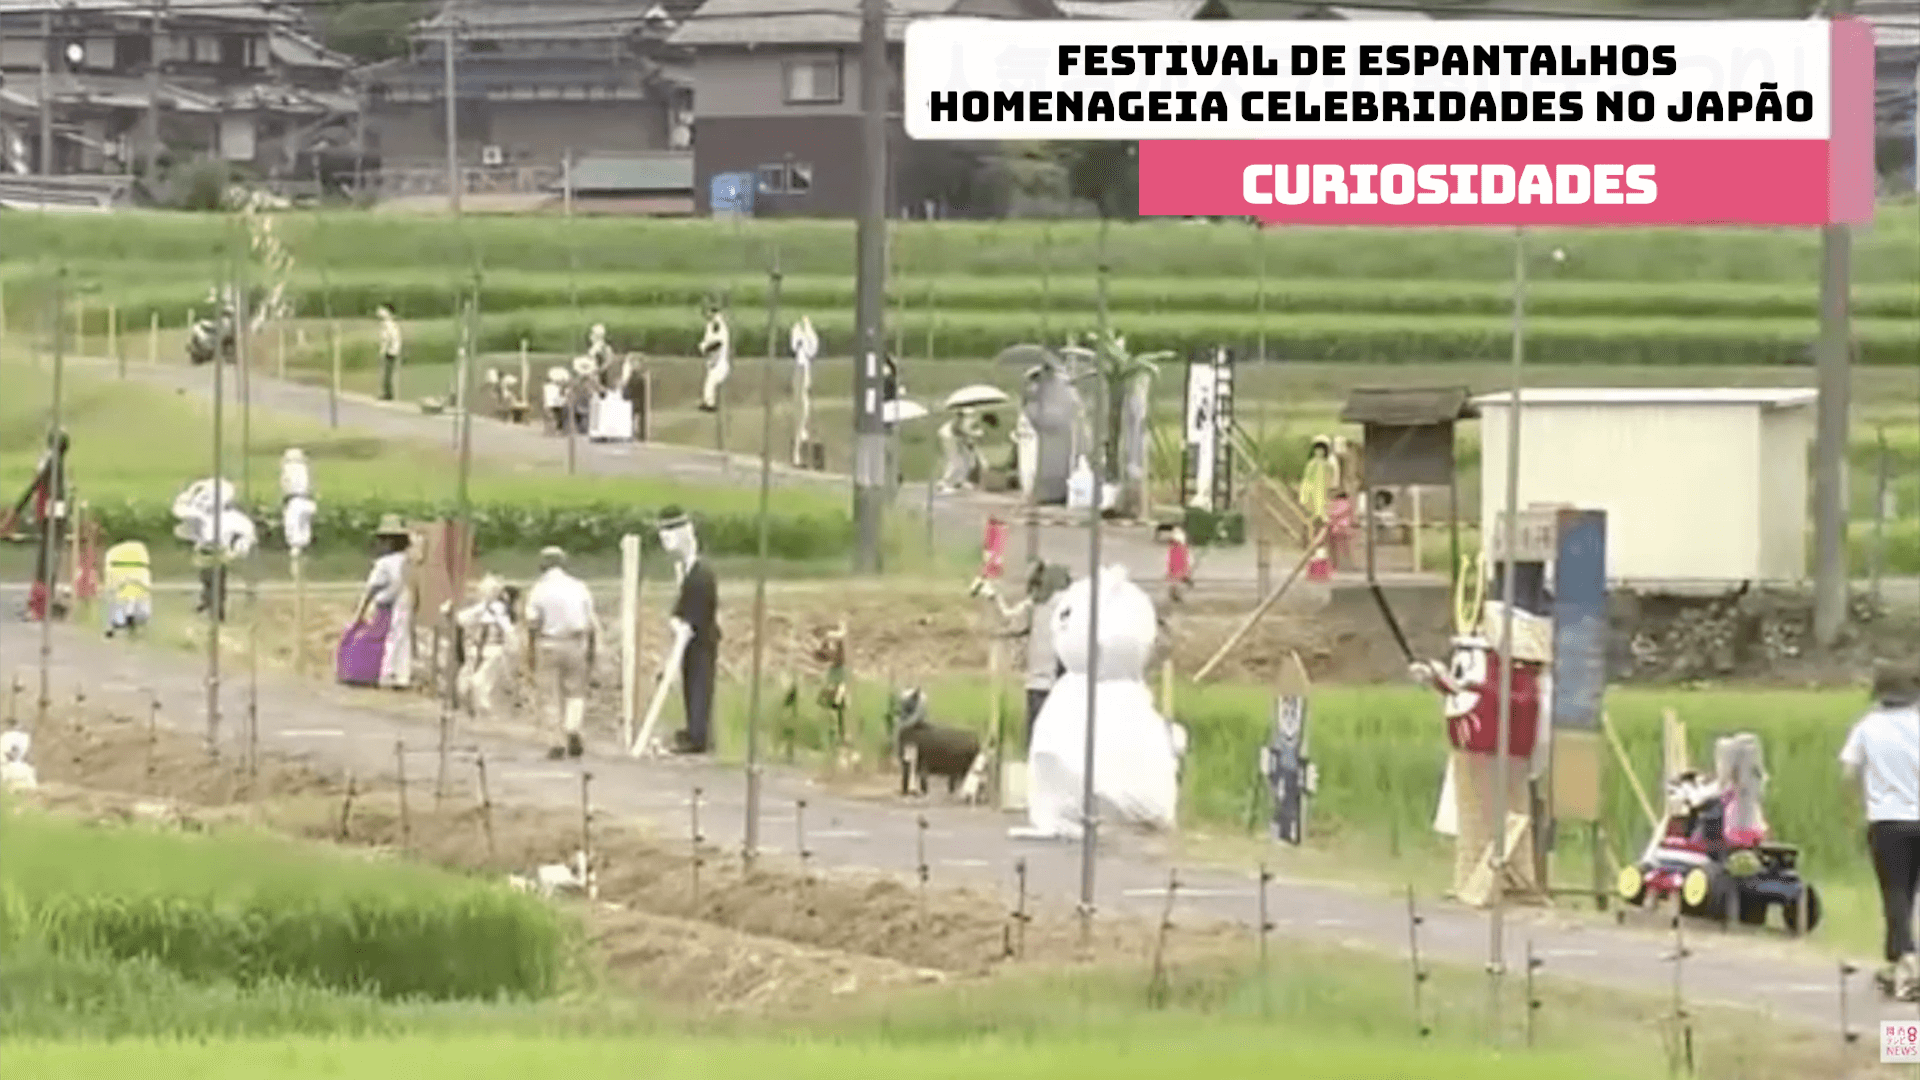 Festival de Espantalhos homenageia celebridades no Japão